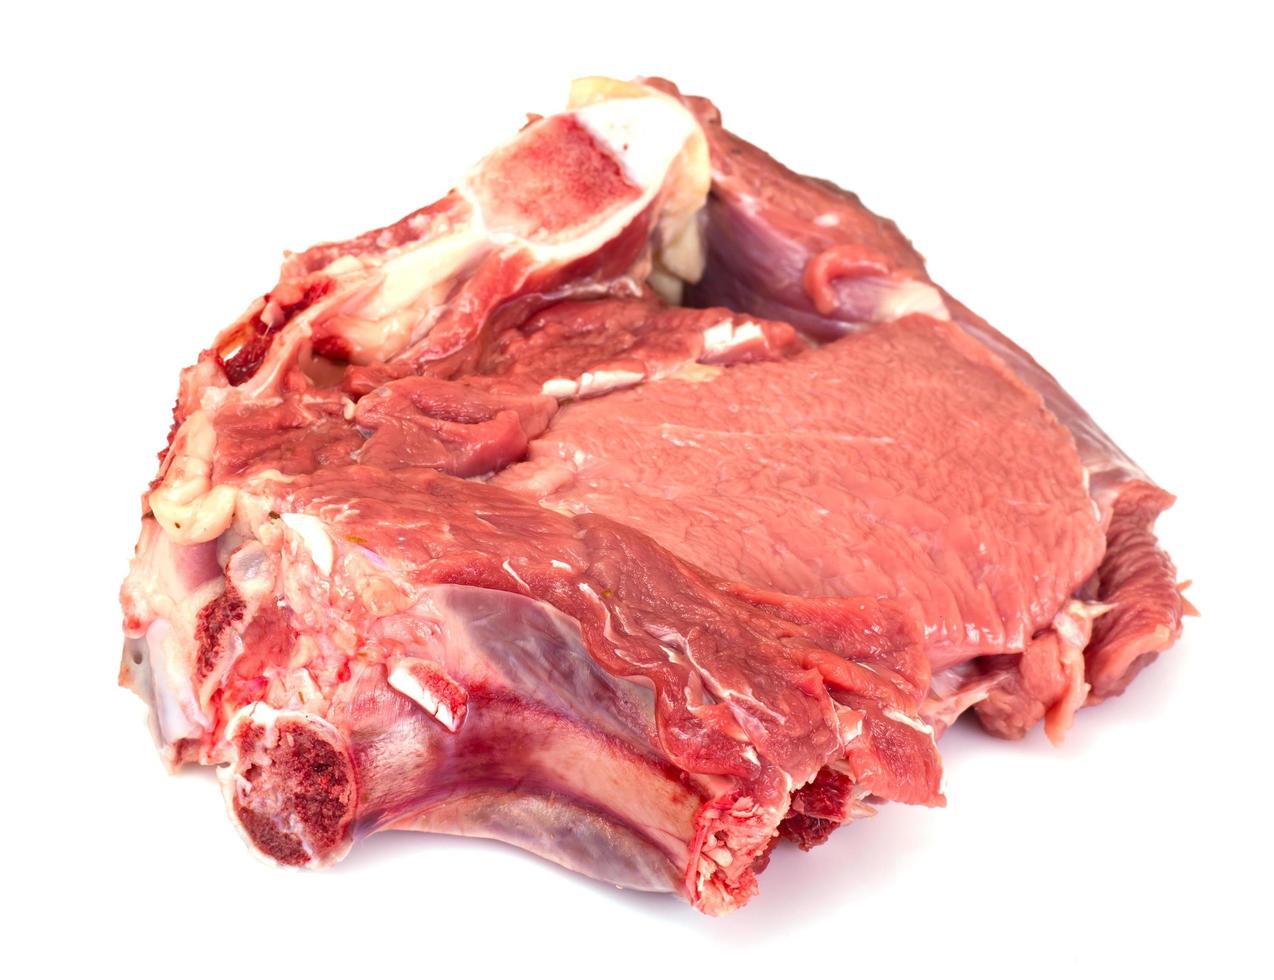 pedaço de carne crua fresca, vitela isolada no fundo branco foto